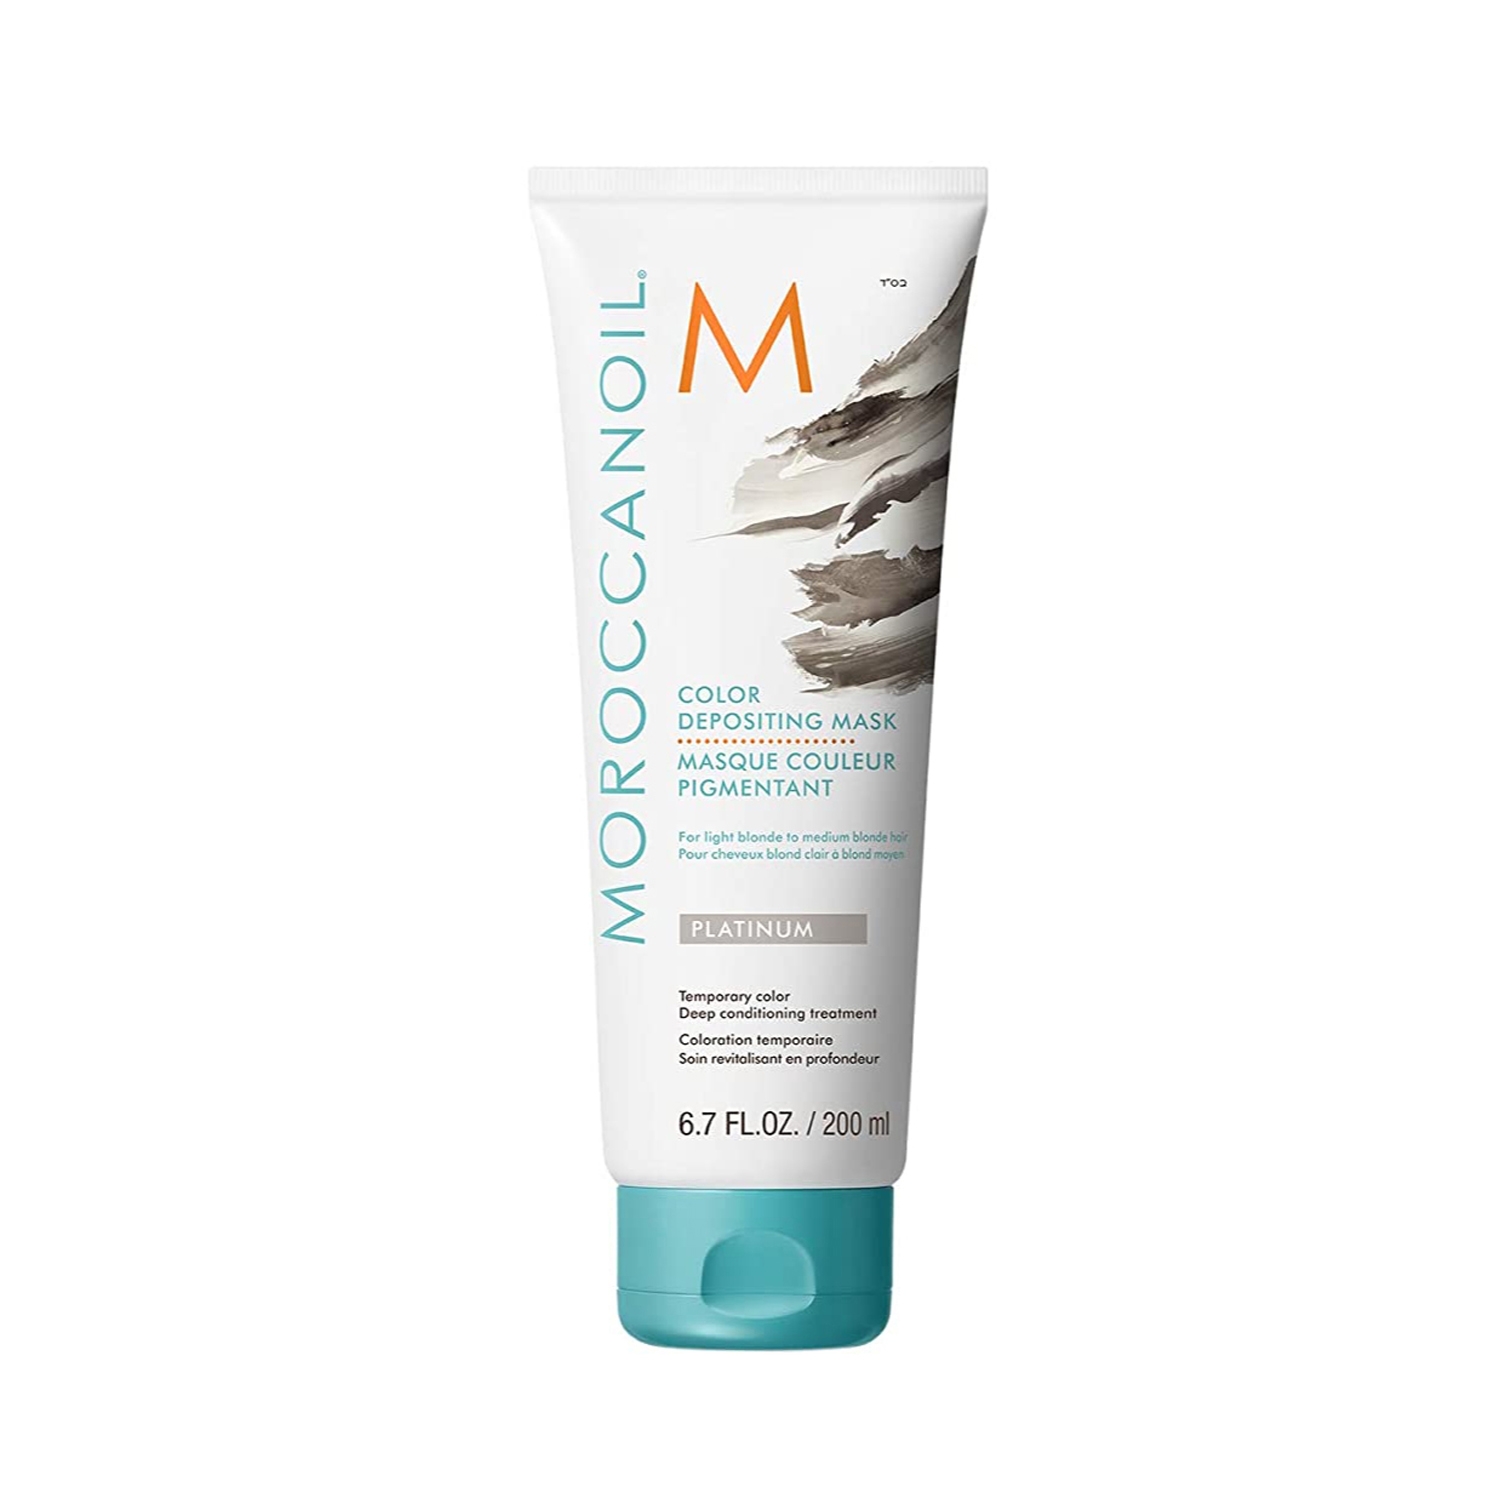 Moroccanoil Depositing Mask Hair Cream - Platinum (200ml)